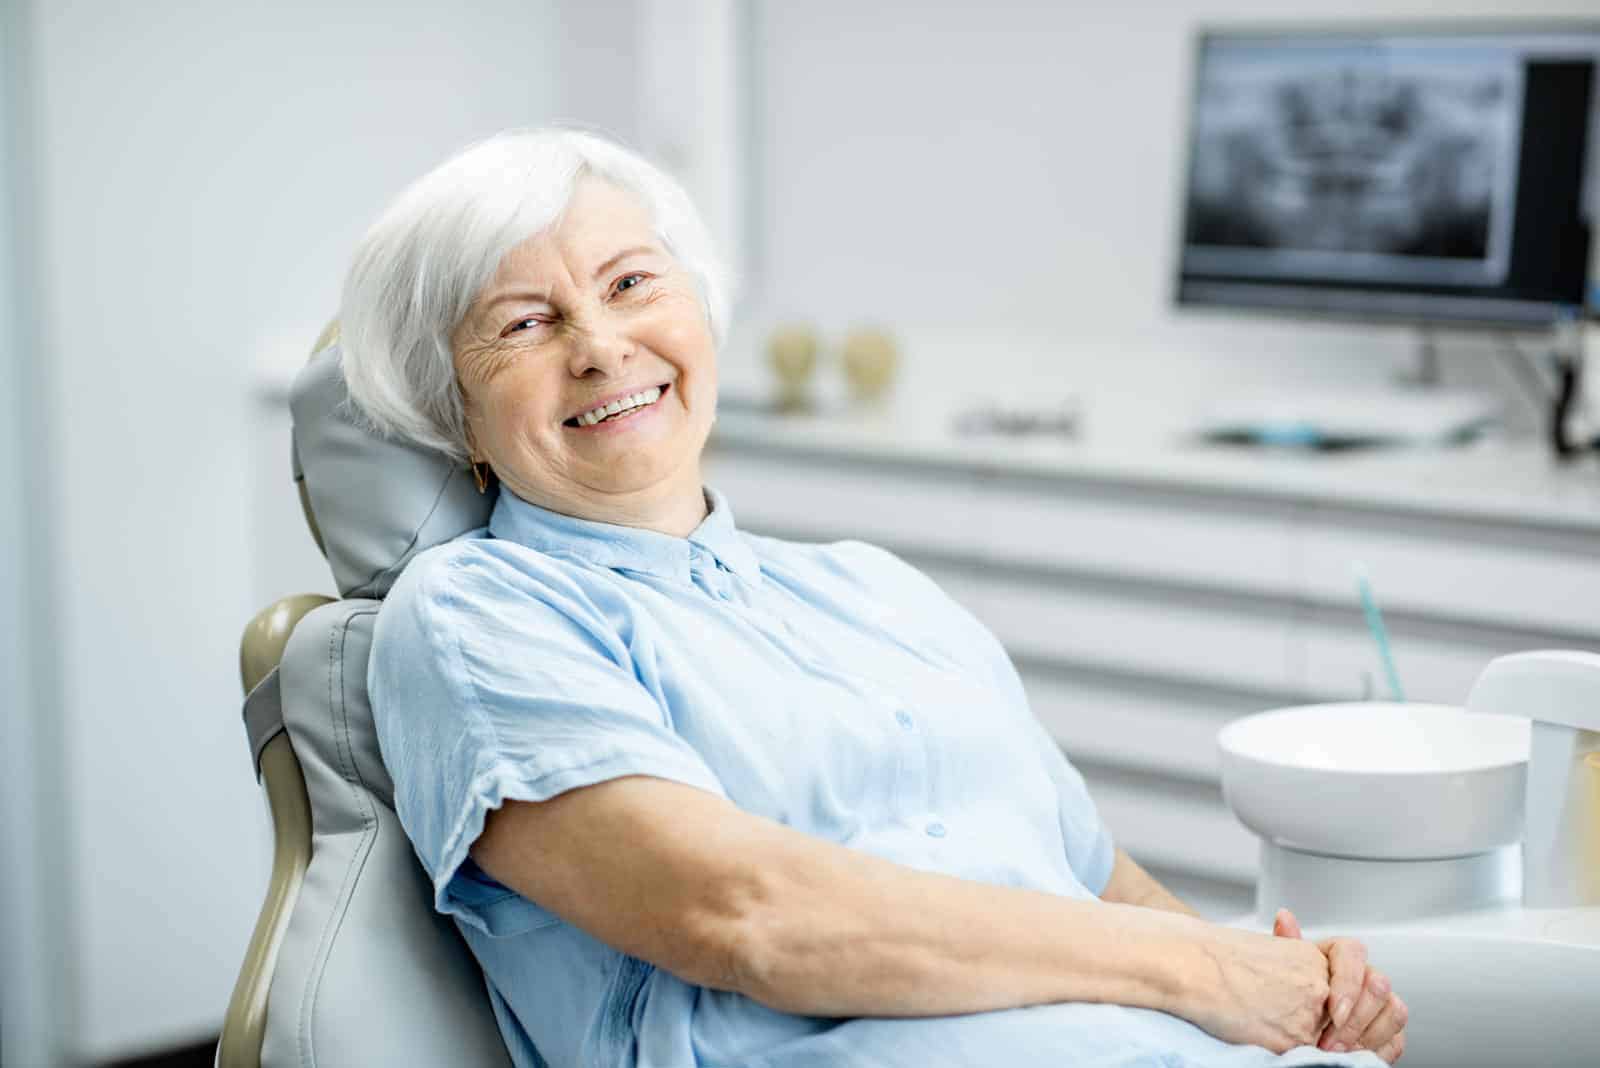 Zahnzusatzversicherung für Senioren